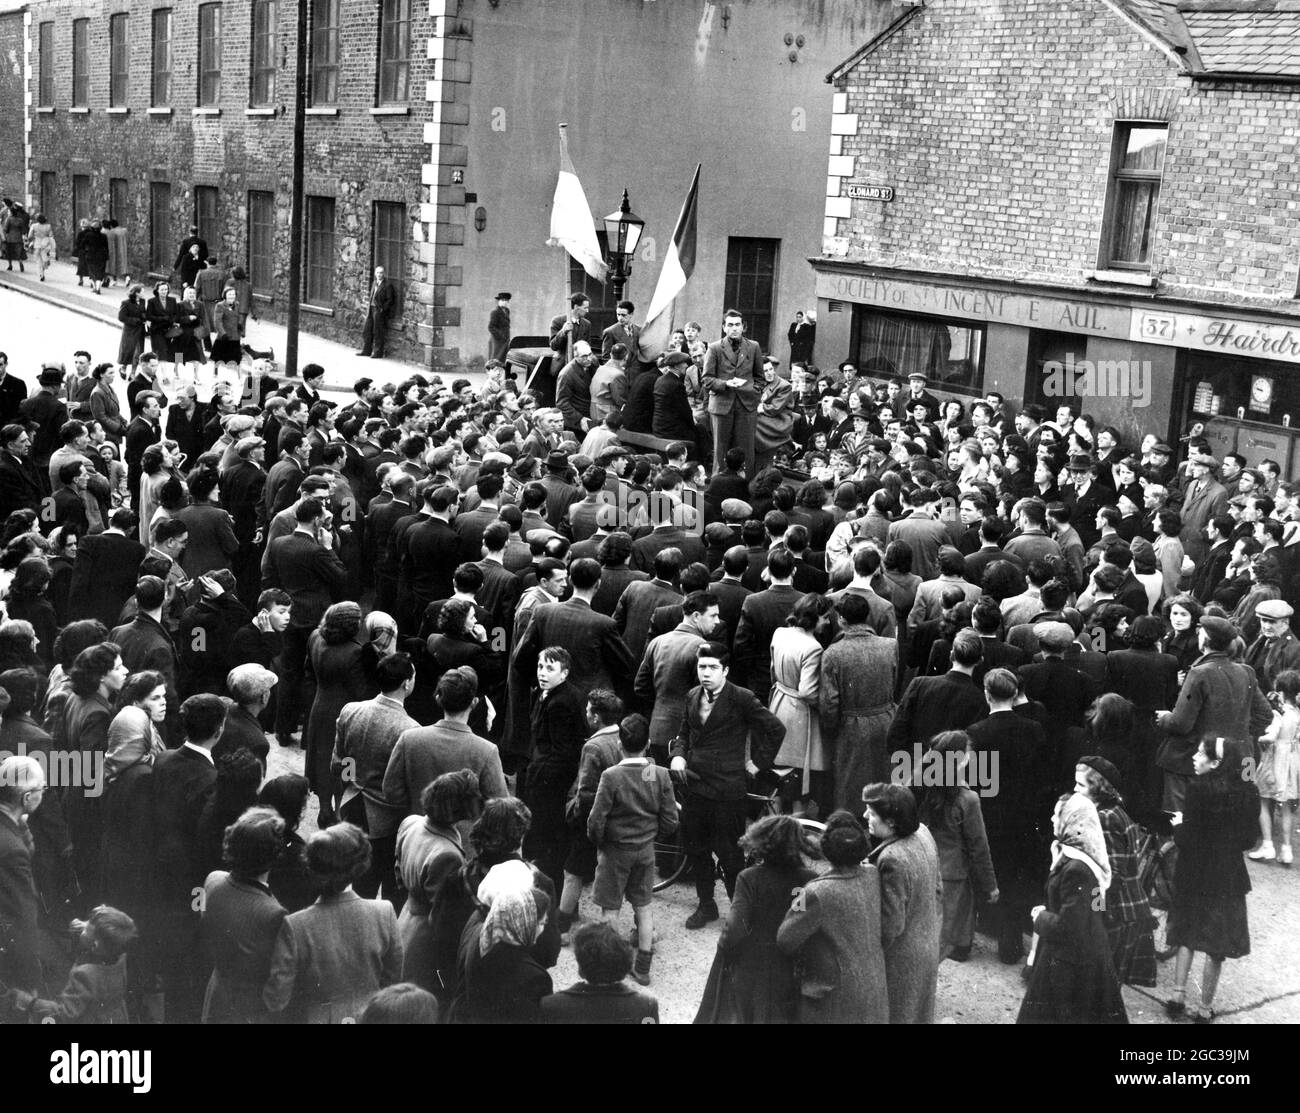 PROTEST GEGEN DEN BESUCH VON ROYAL ULSTER. ORGANISIERT VON SINN FEIN. Belfast: Gegen den Besuch von Königin Elizabeth und Prinzessin Margaret in Nordirland sprechen die Redner in der Clonard Street, Belfast, eine Menschenmenge von etwa 300 Personen an. Auf Anordnung von Mitgliedern der Sinn Fein-Organisation wurden bei dem Treffen auch Redner gegen die Festnahme von 13 Männern als Sicherheitsmaßnahme im Zusammenhang mit dem Besuch protestiert. Das Treffen war ordentlich und die Polizei schaute zu, als die Menge zur Clonard Street marschierte, um dort zu treffen. Juni 1951 Stockfoto